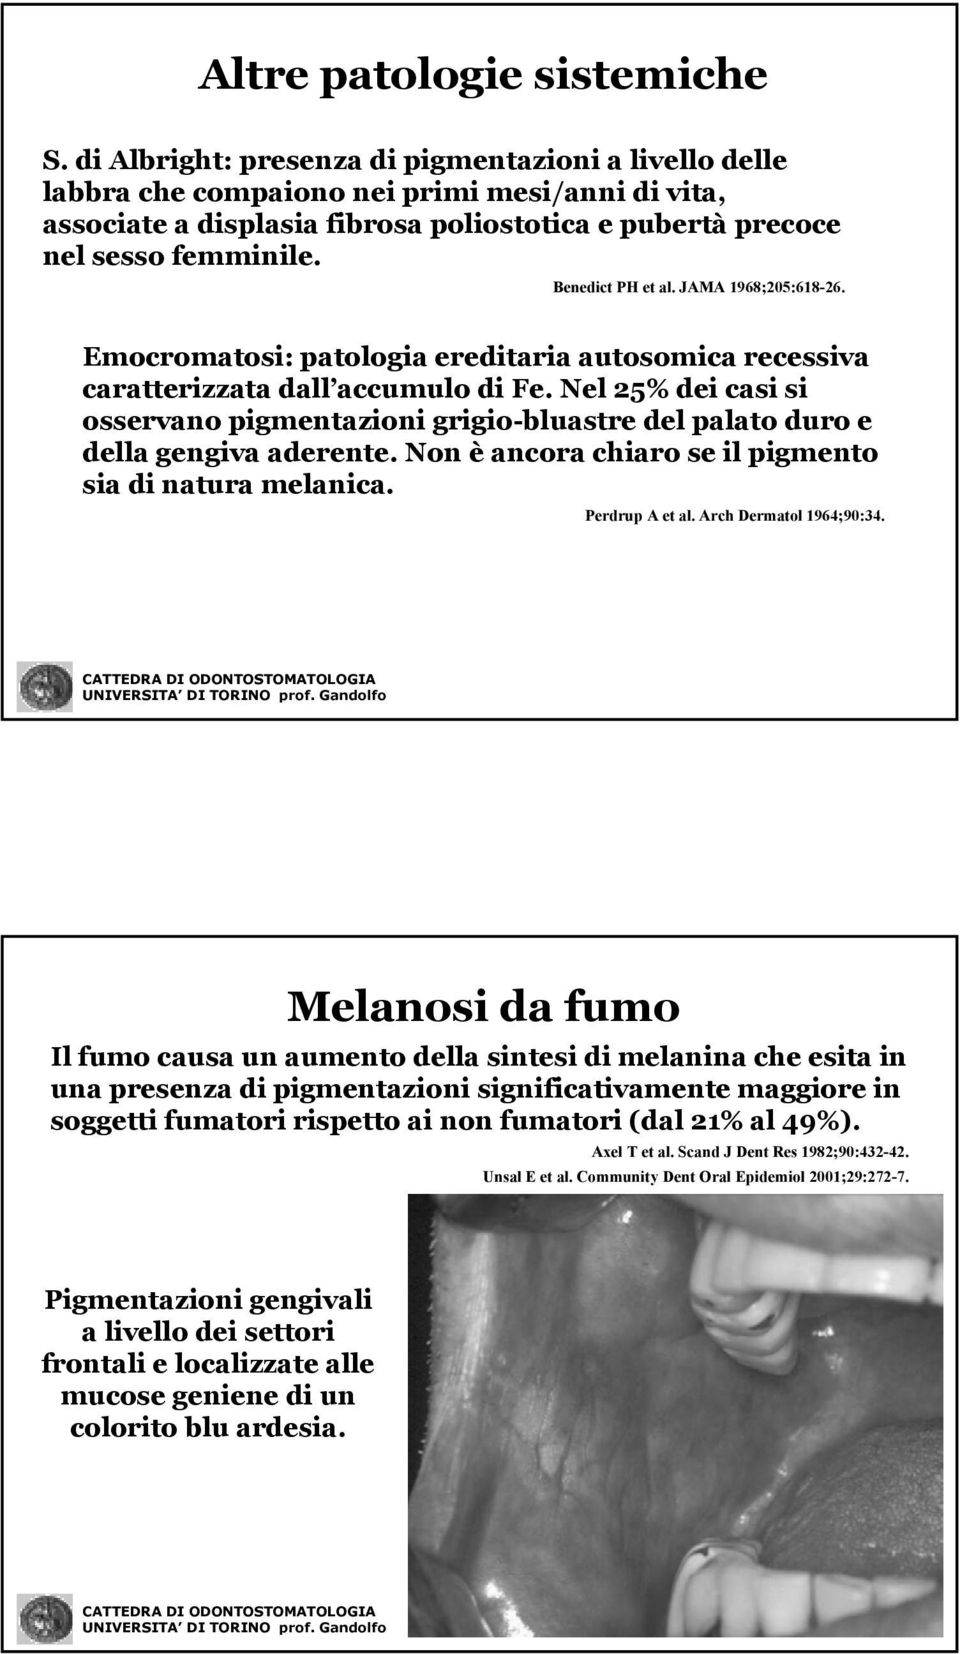 Benedict PH et al. JAMA 1968;205:618-26. 26. Emocromatosi: patologia ereditaria autosomica recessiva caratterizzata dall accumulo di Fe.